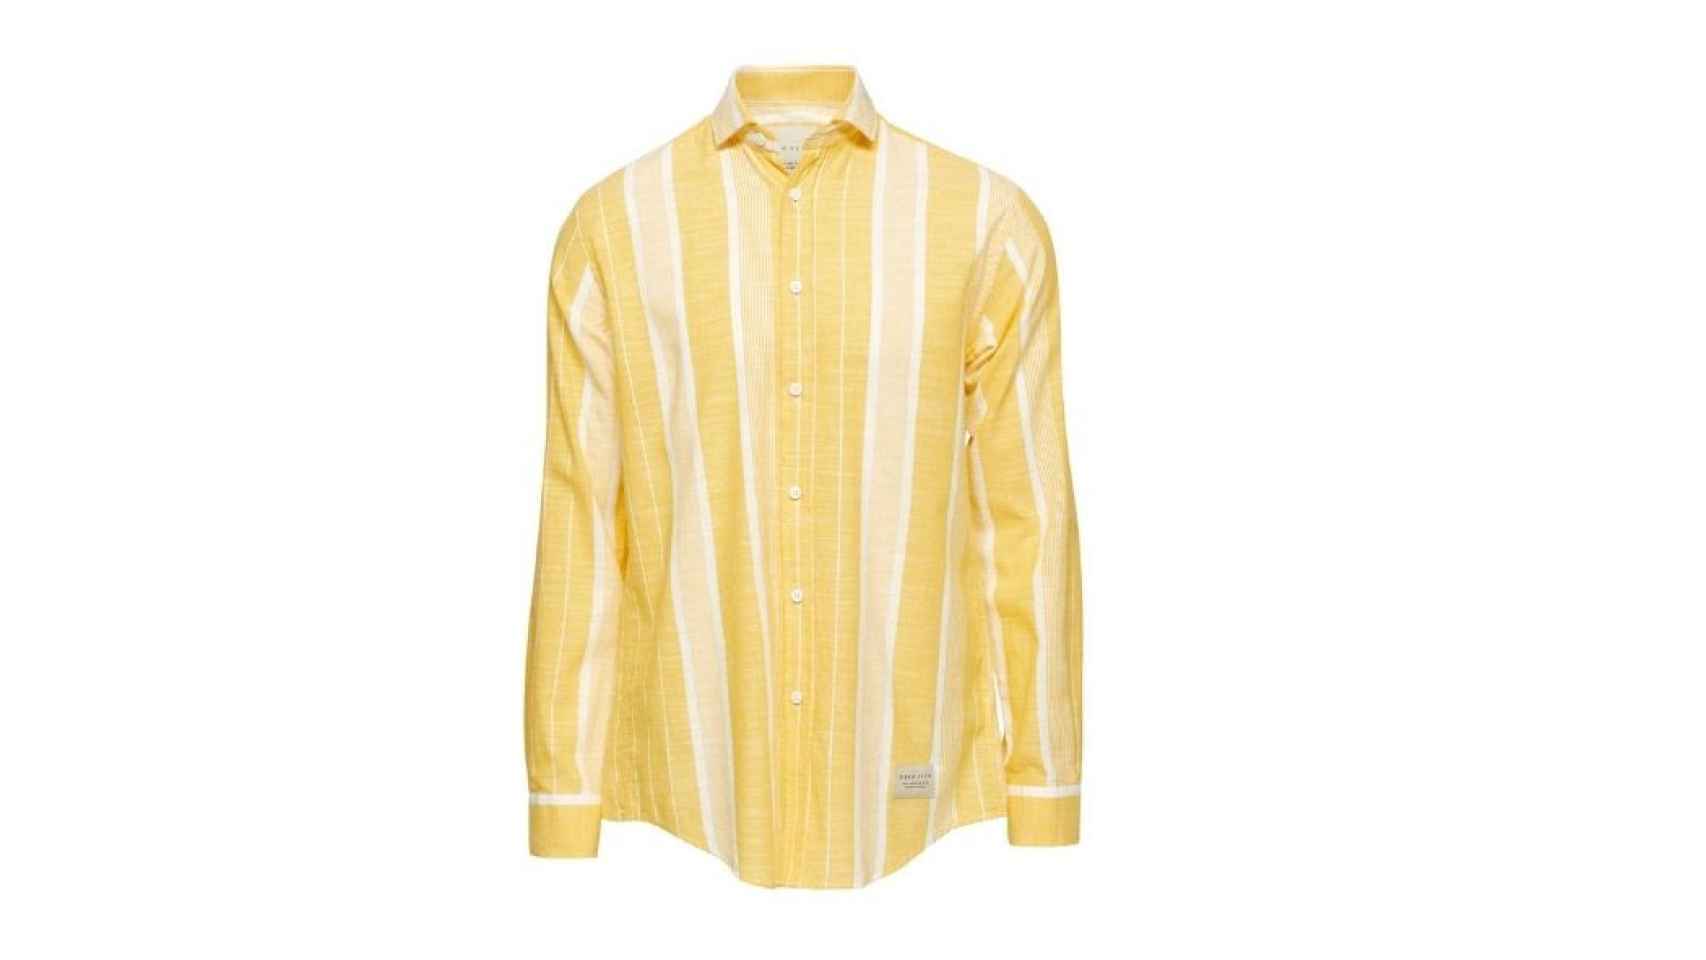 Camisa amarillo de Polo Club, por 49,99 euros.